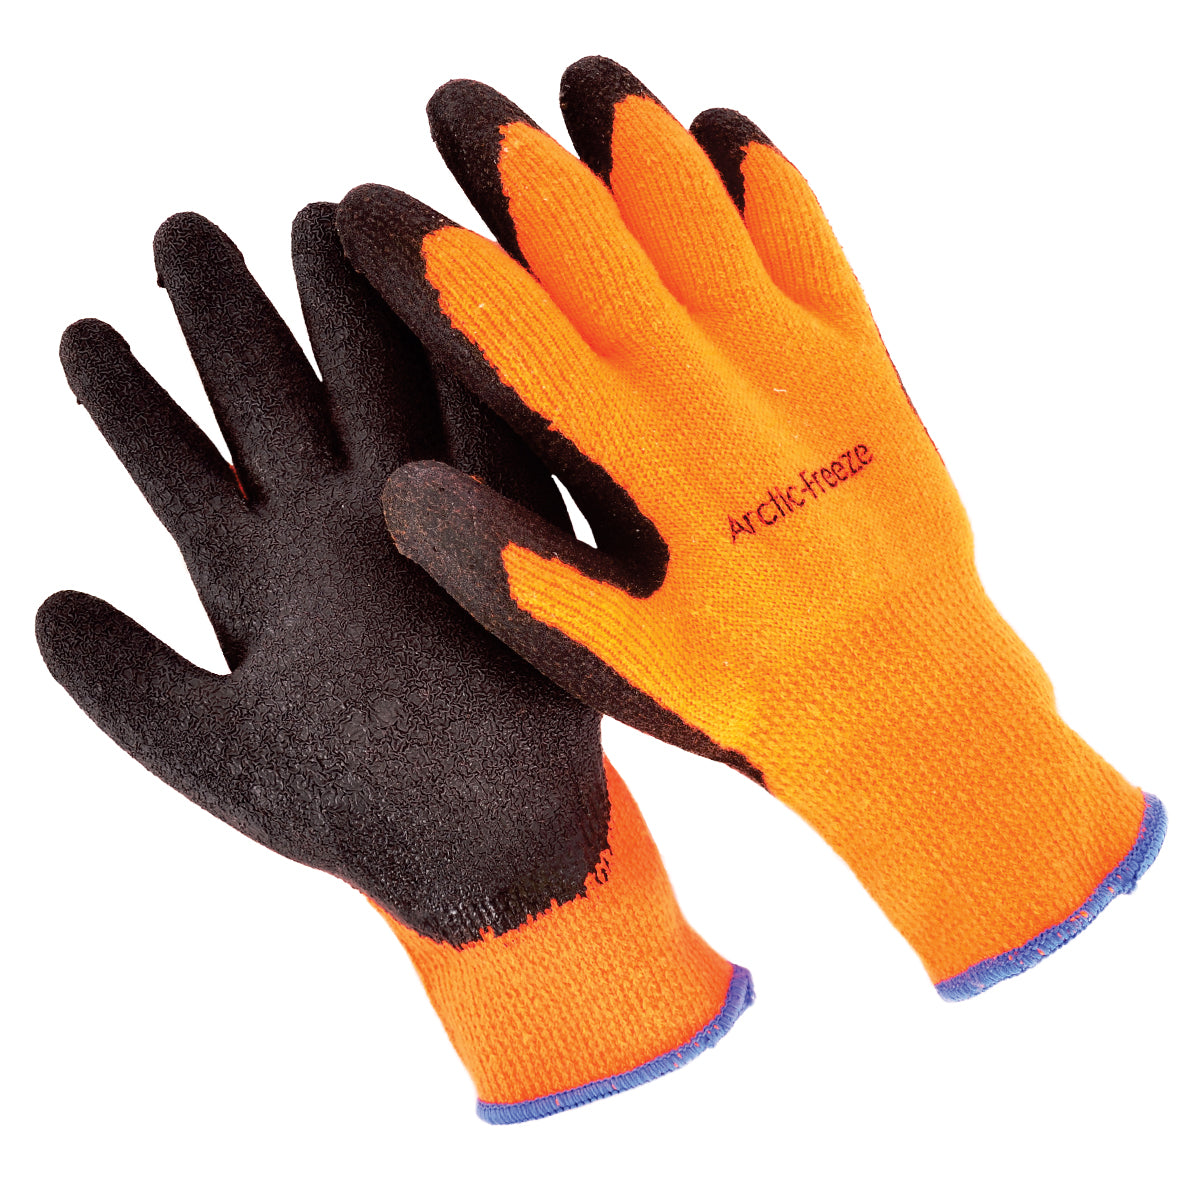  Illinois Glove Company, Guantes mecánicos de alta